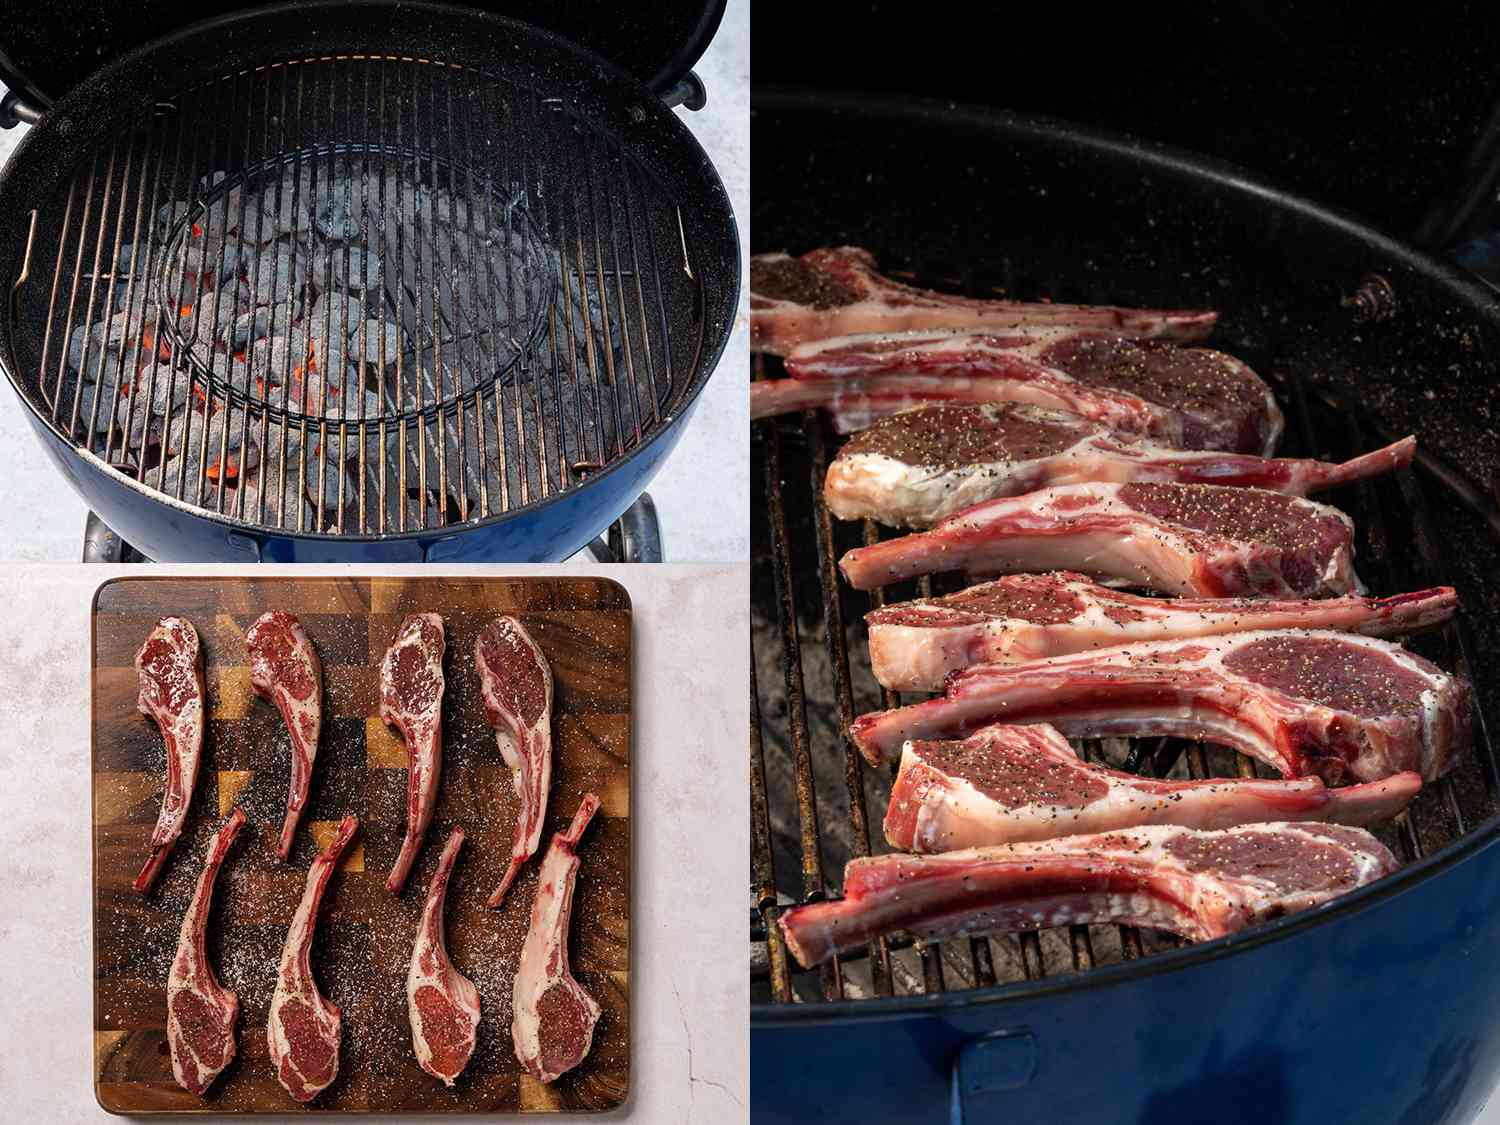 三幅图片的拼贴。左上角的图片显示了一个木炭烧烤准备烹饪。左下角的图片显示了在砧板上调味和休息的生羊排。右图显示了调味的，未煮熟的羊排骨放在烤架上。gydF4y2Ba